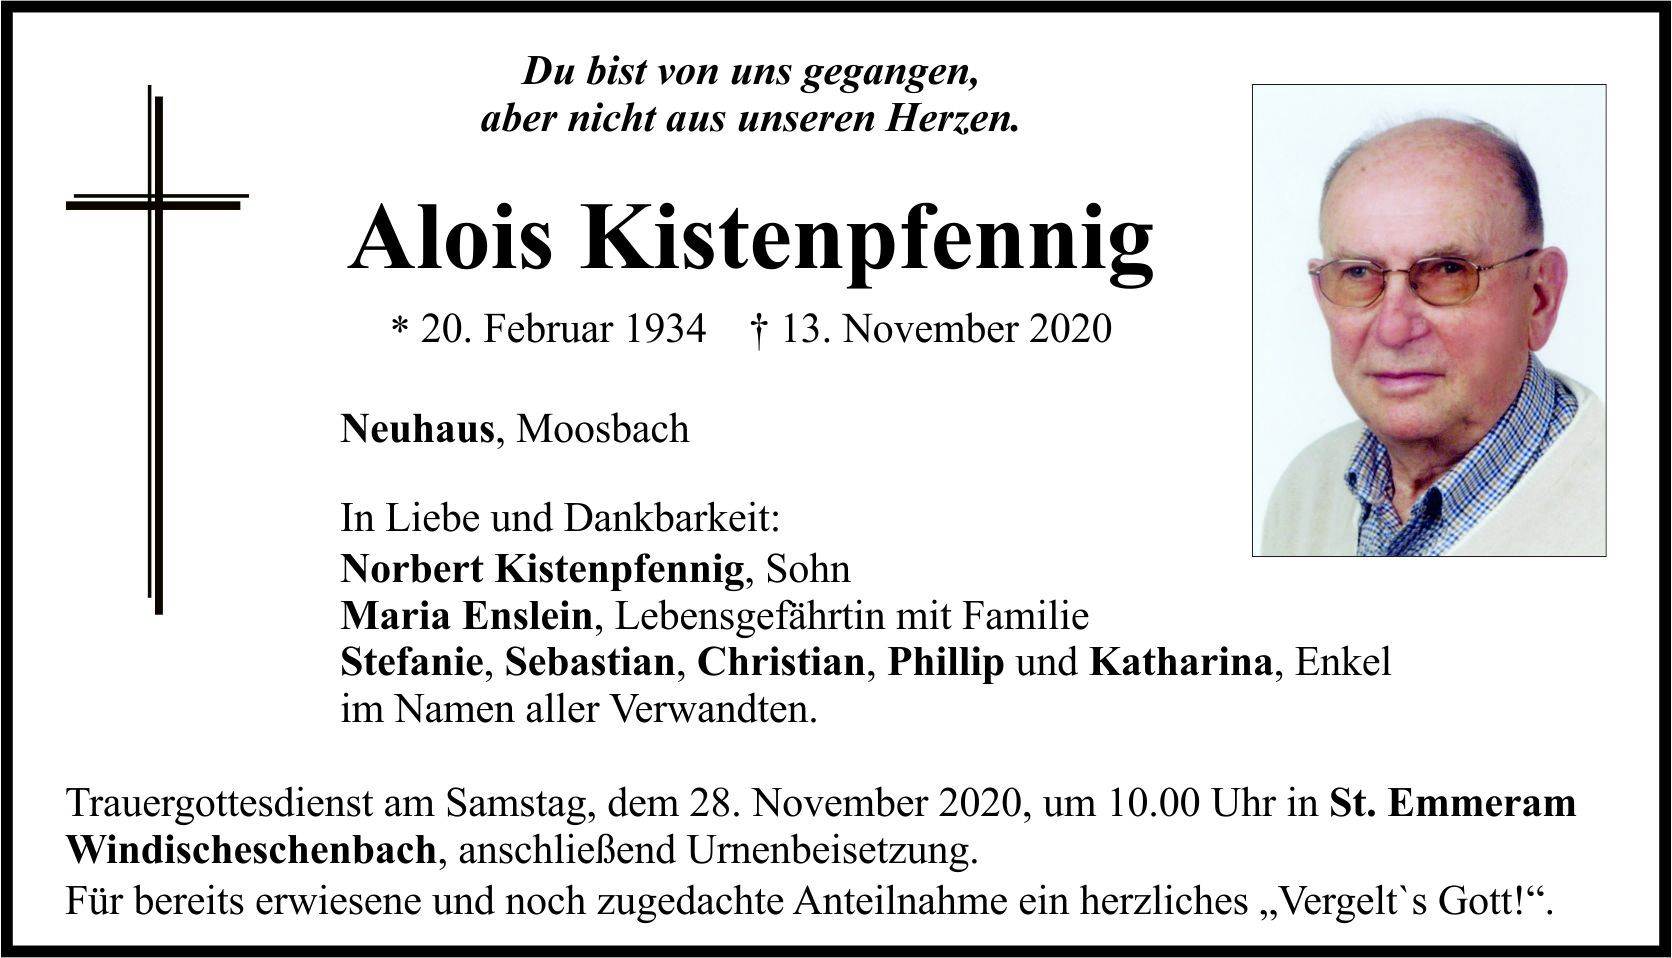 Traueranzeige Alois Kistenpfenning, Neuhaus